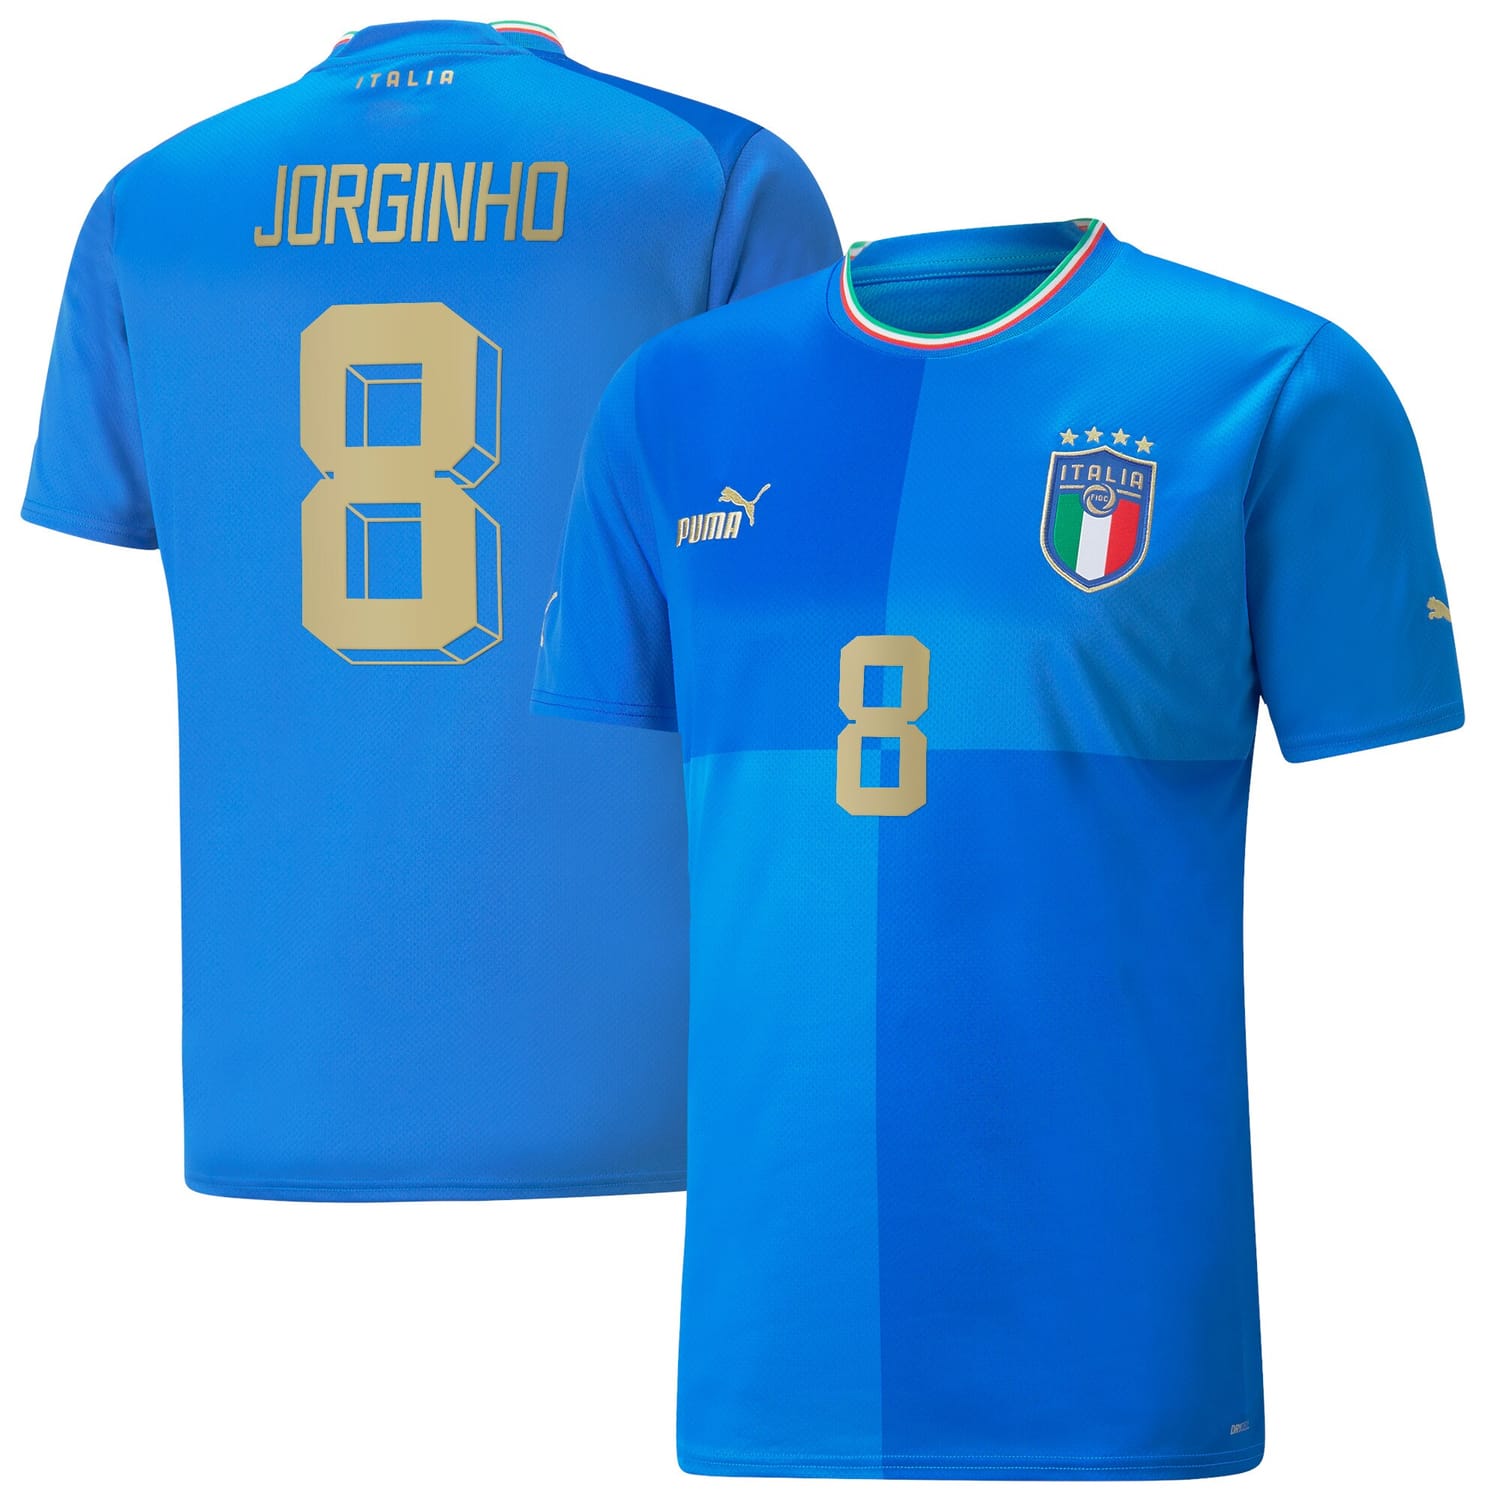 Italy National Team Home Jersey Shirt player Jorginho 8 printing for Men